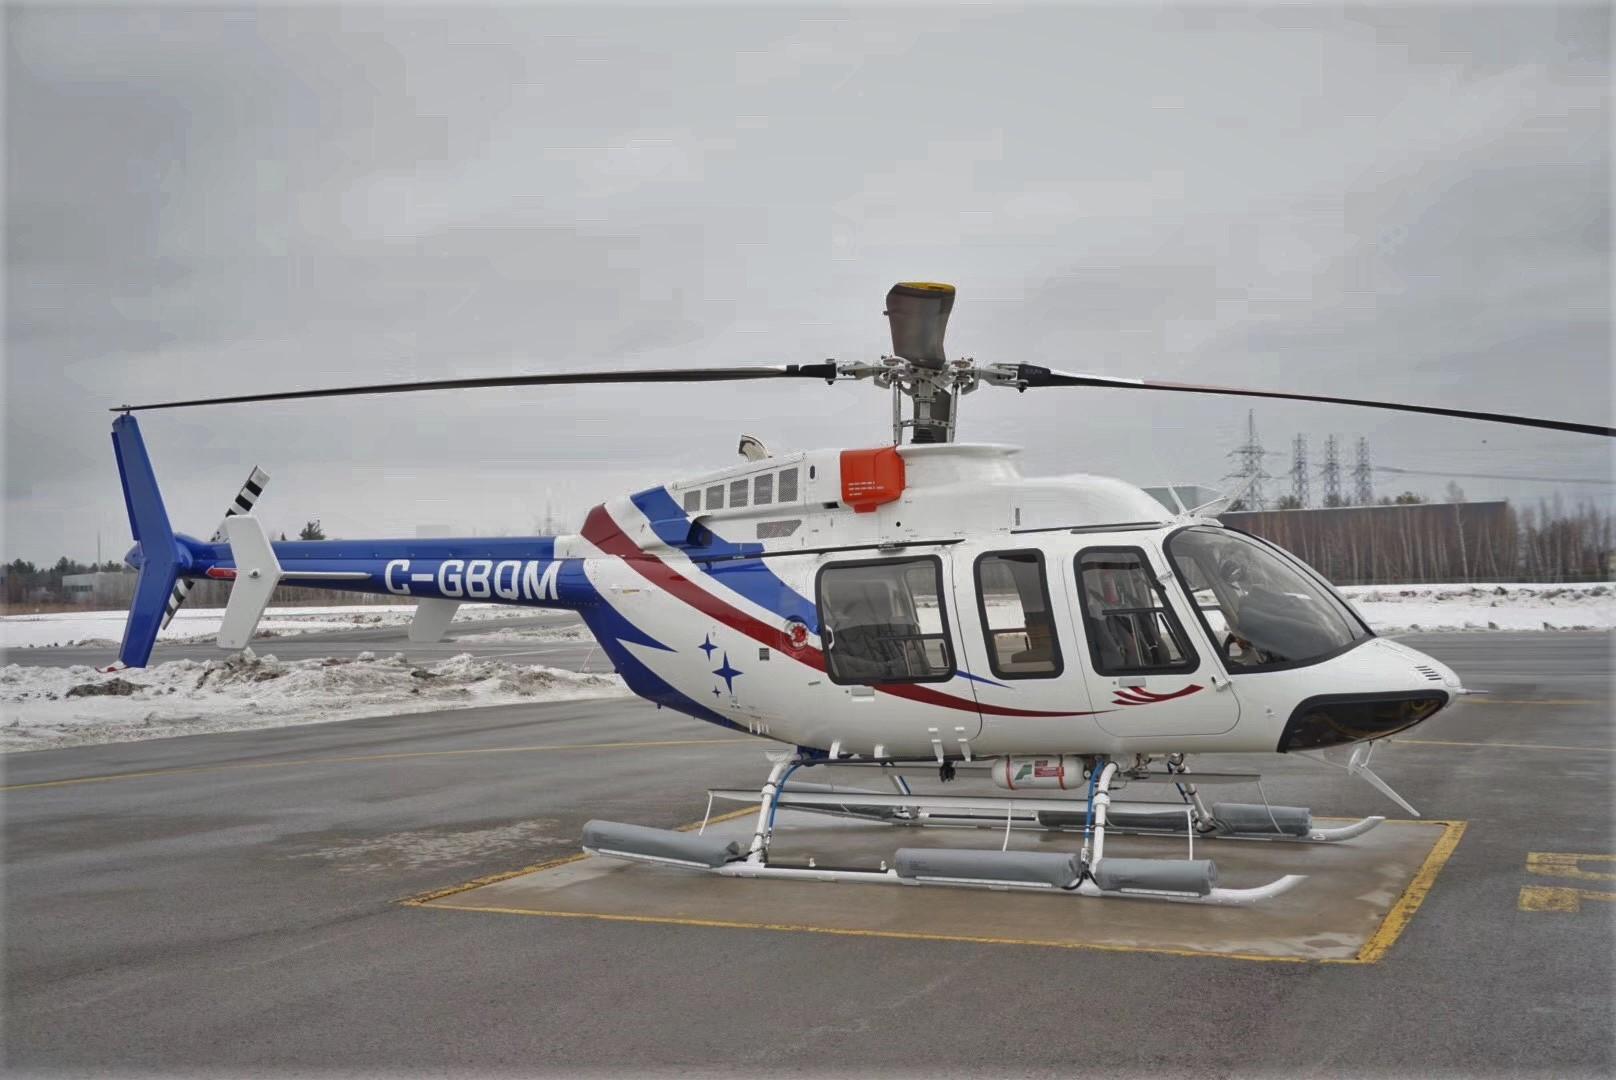 塔山通航率先展示全新贝尔407gxi直升机 搭载全新综合航电系统